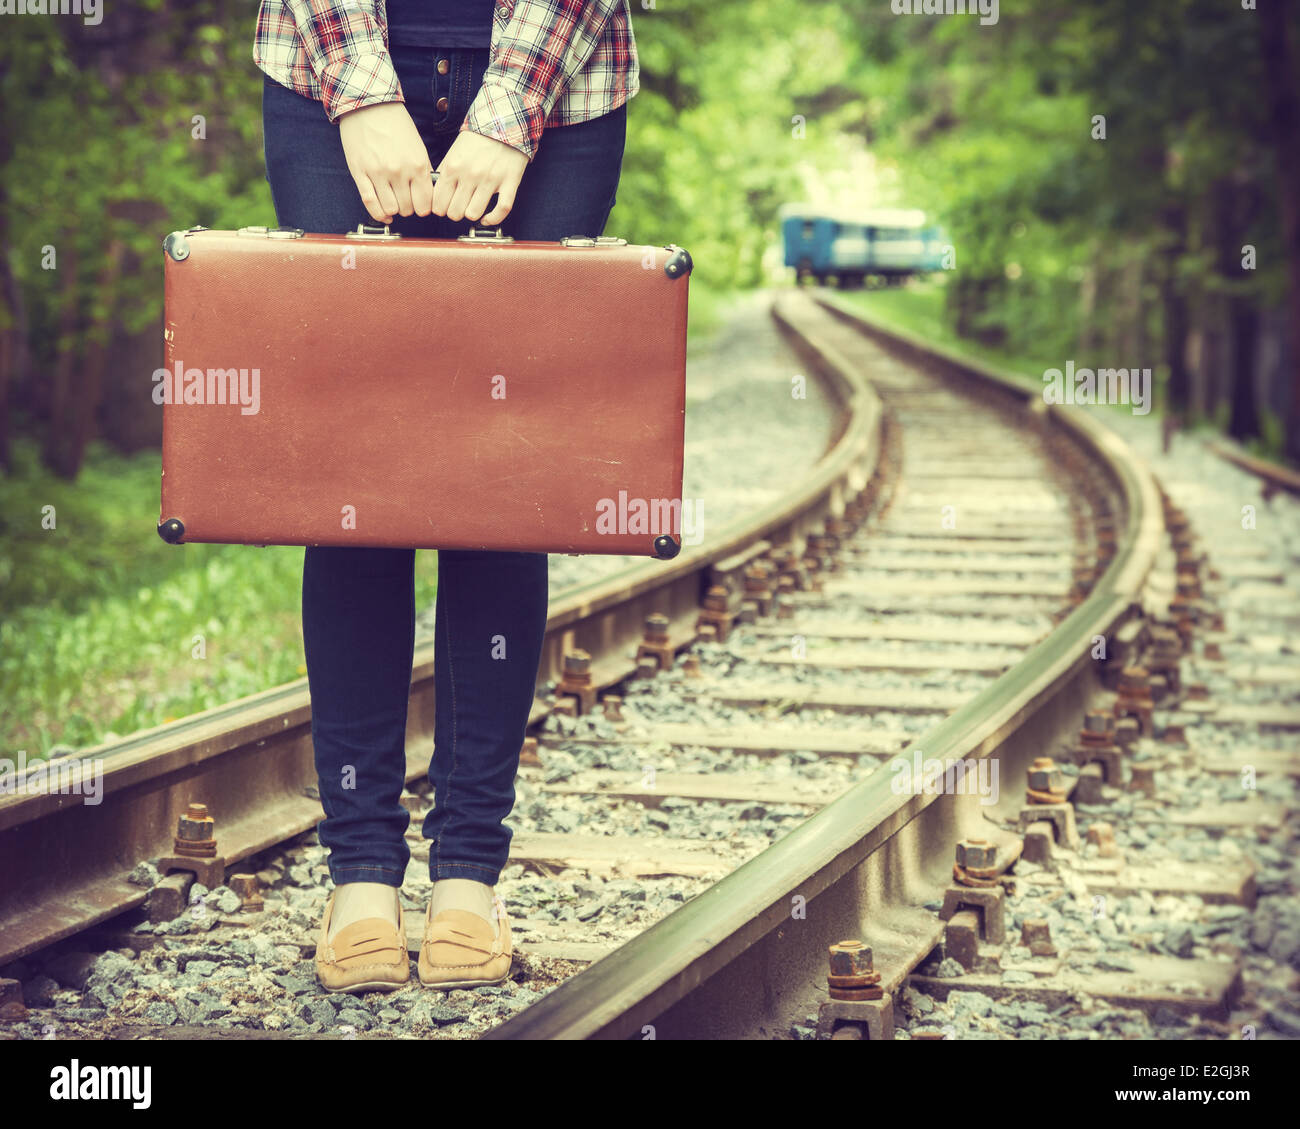 Giovane donna con la vecchia valigia su ferrovia e treno in partenza sullo sfondo, retro stilizzata Foto Stock